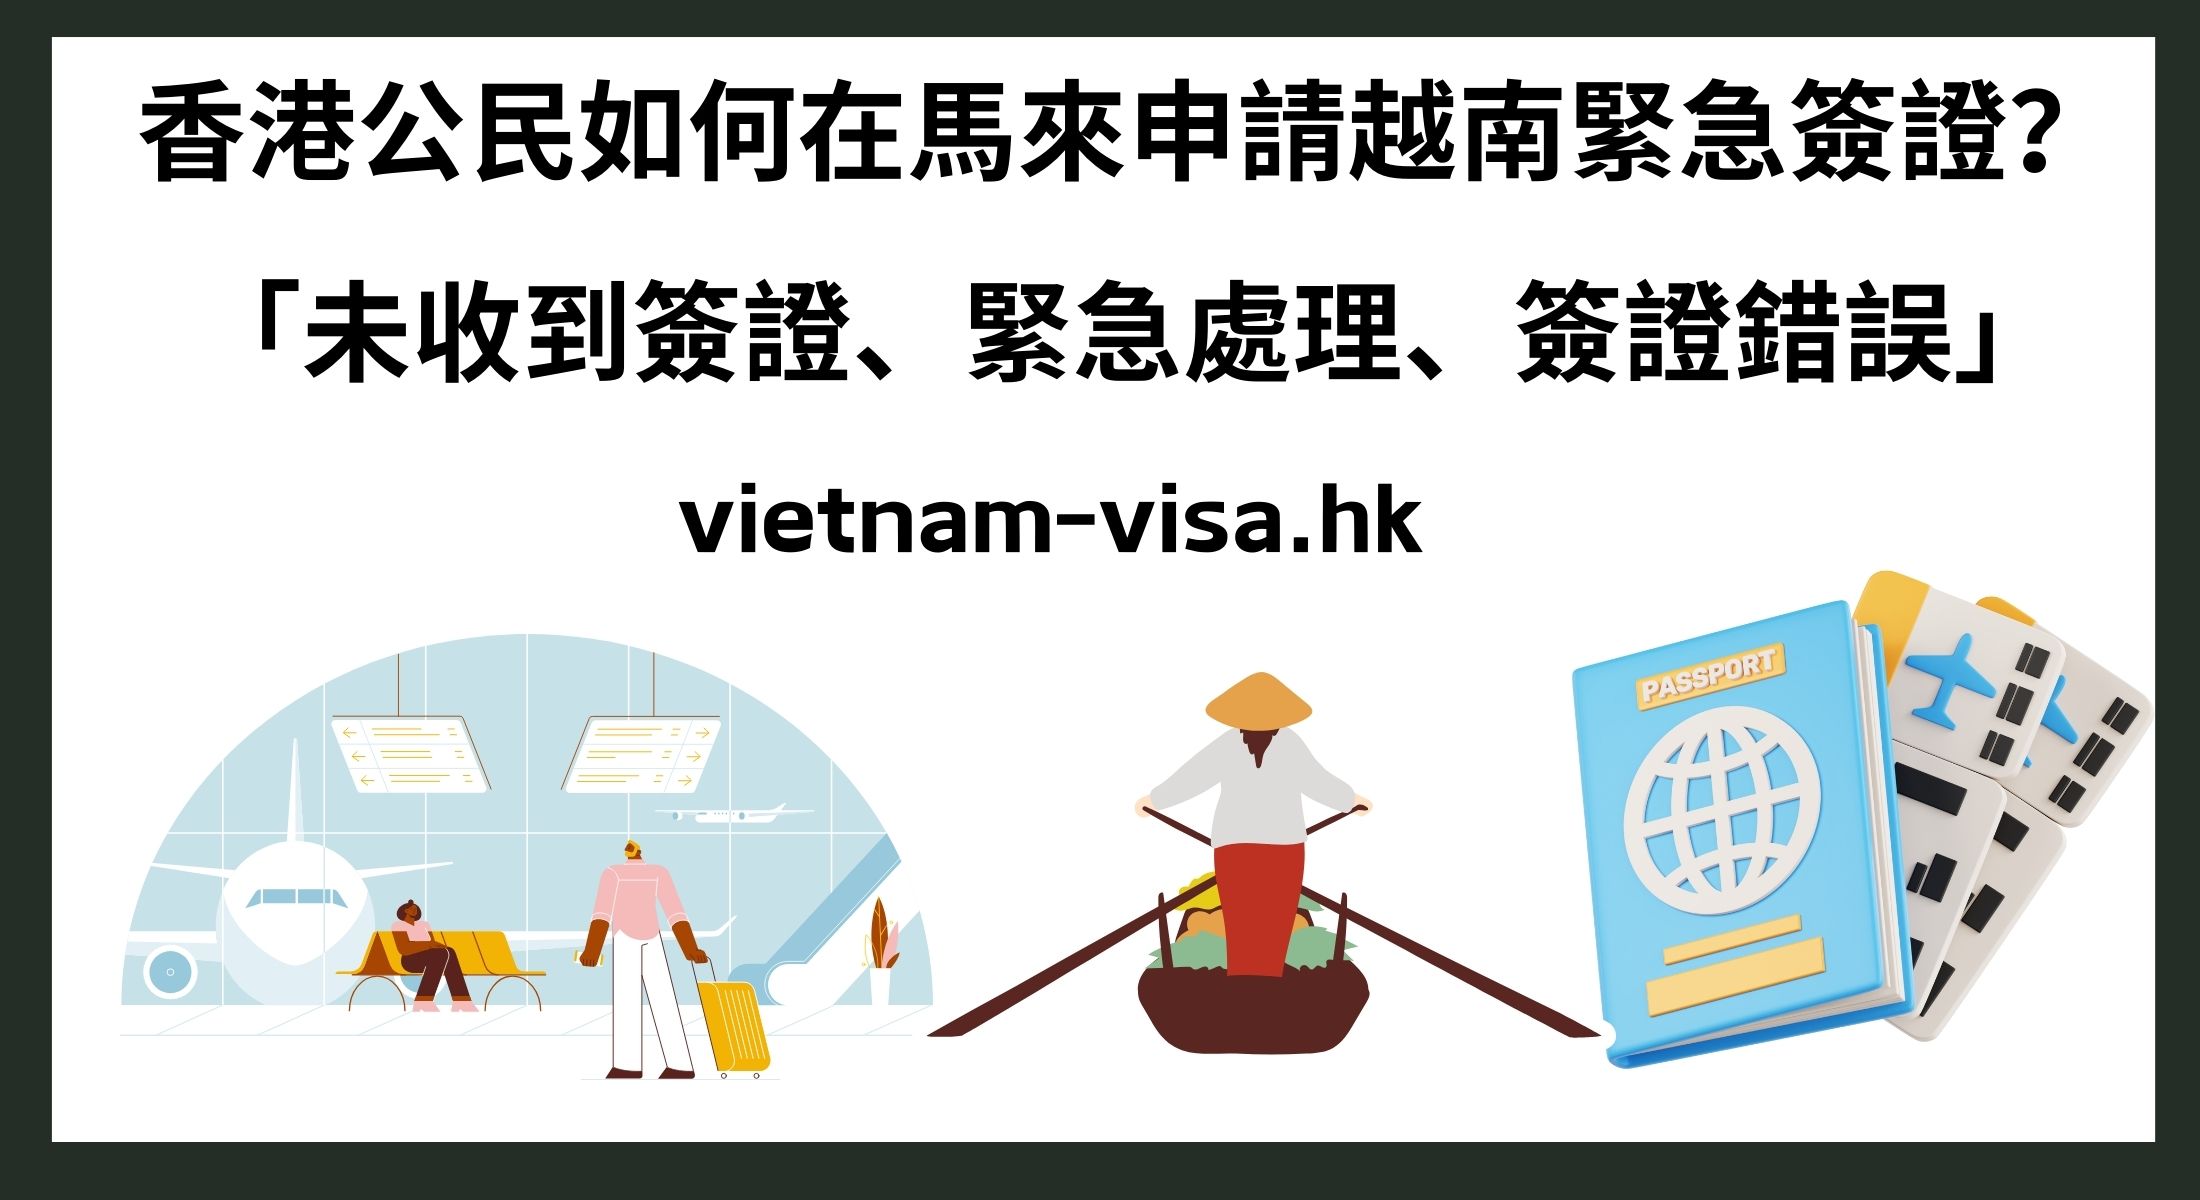 香港公民如何在馬來申請越南緊急簽證？ 「未收到簽證、緊急處理、簽證錯誤」